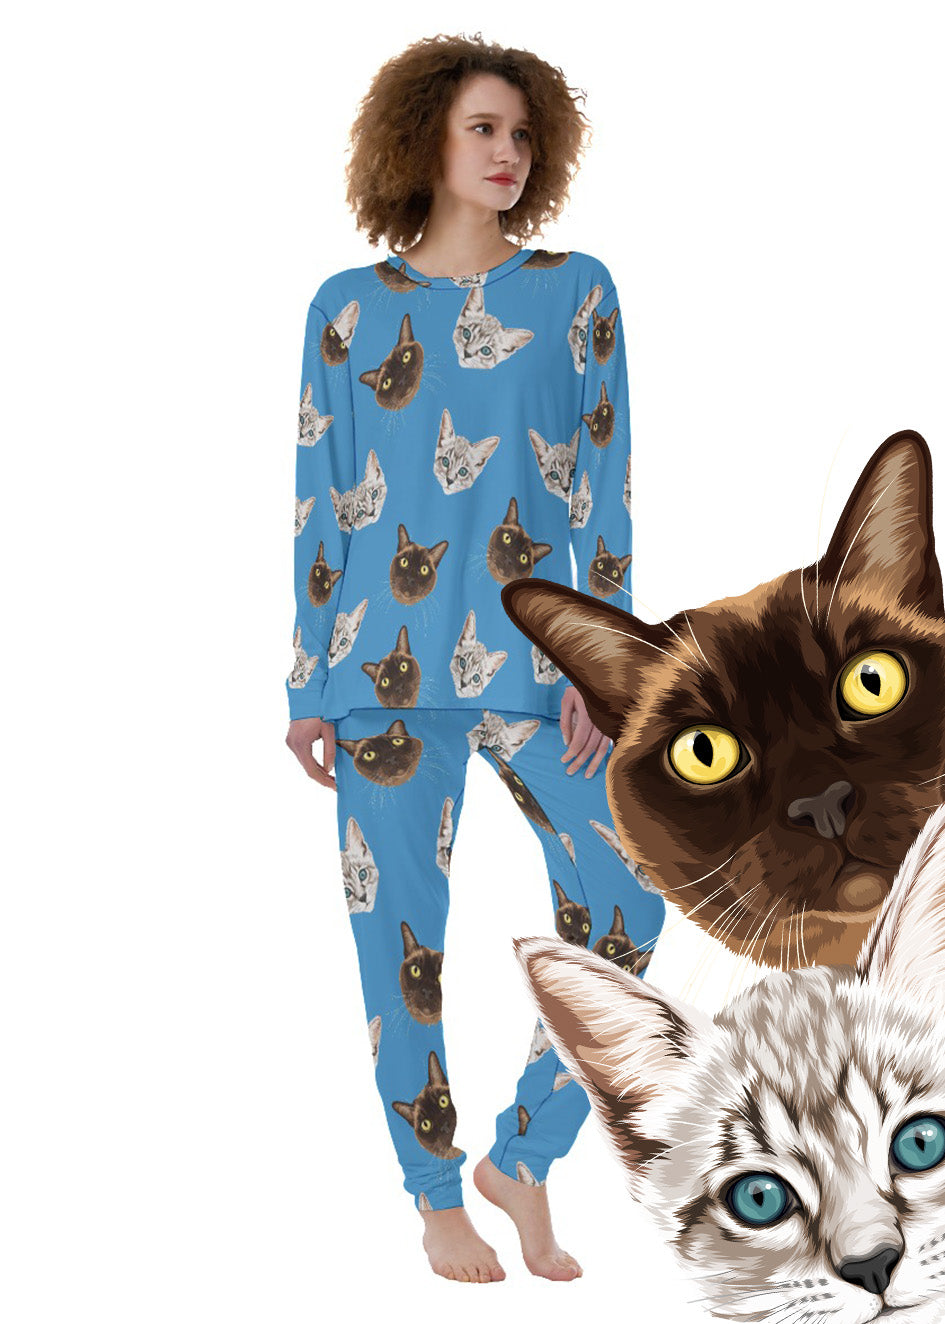 Custom Pyjamas [COTTON]: Orig. Face Art (Dog, Cat, Human Face)